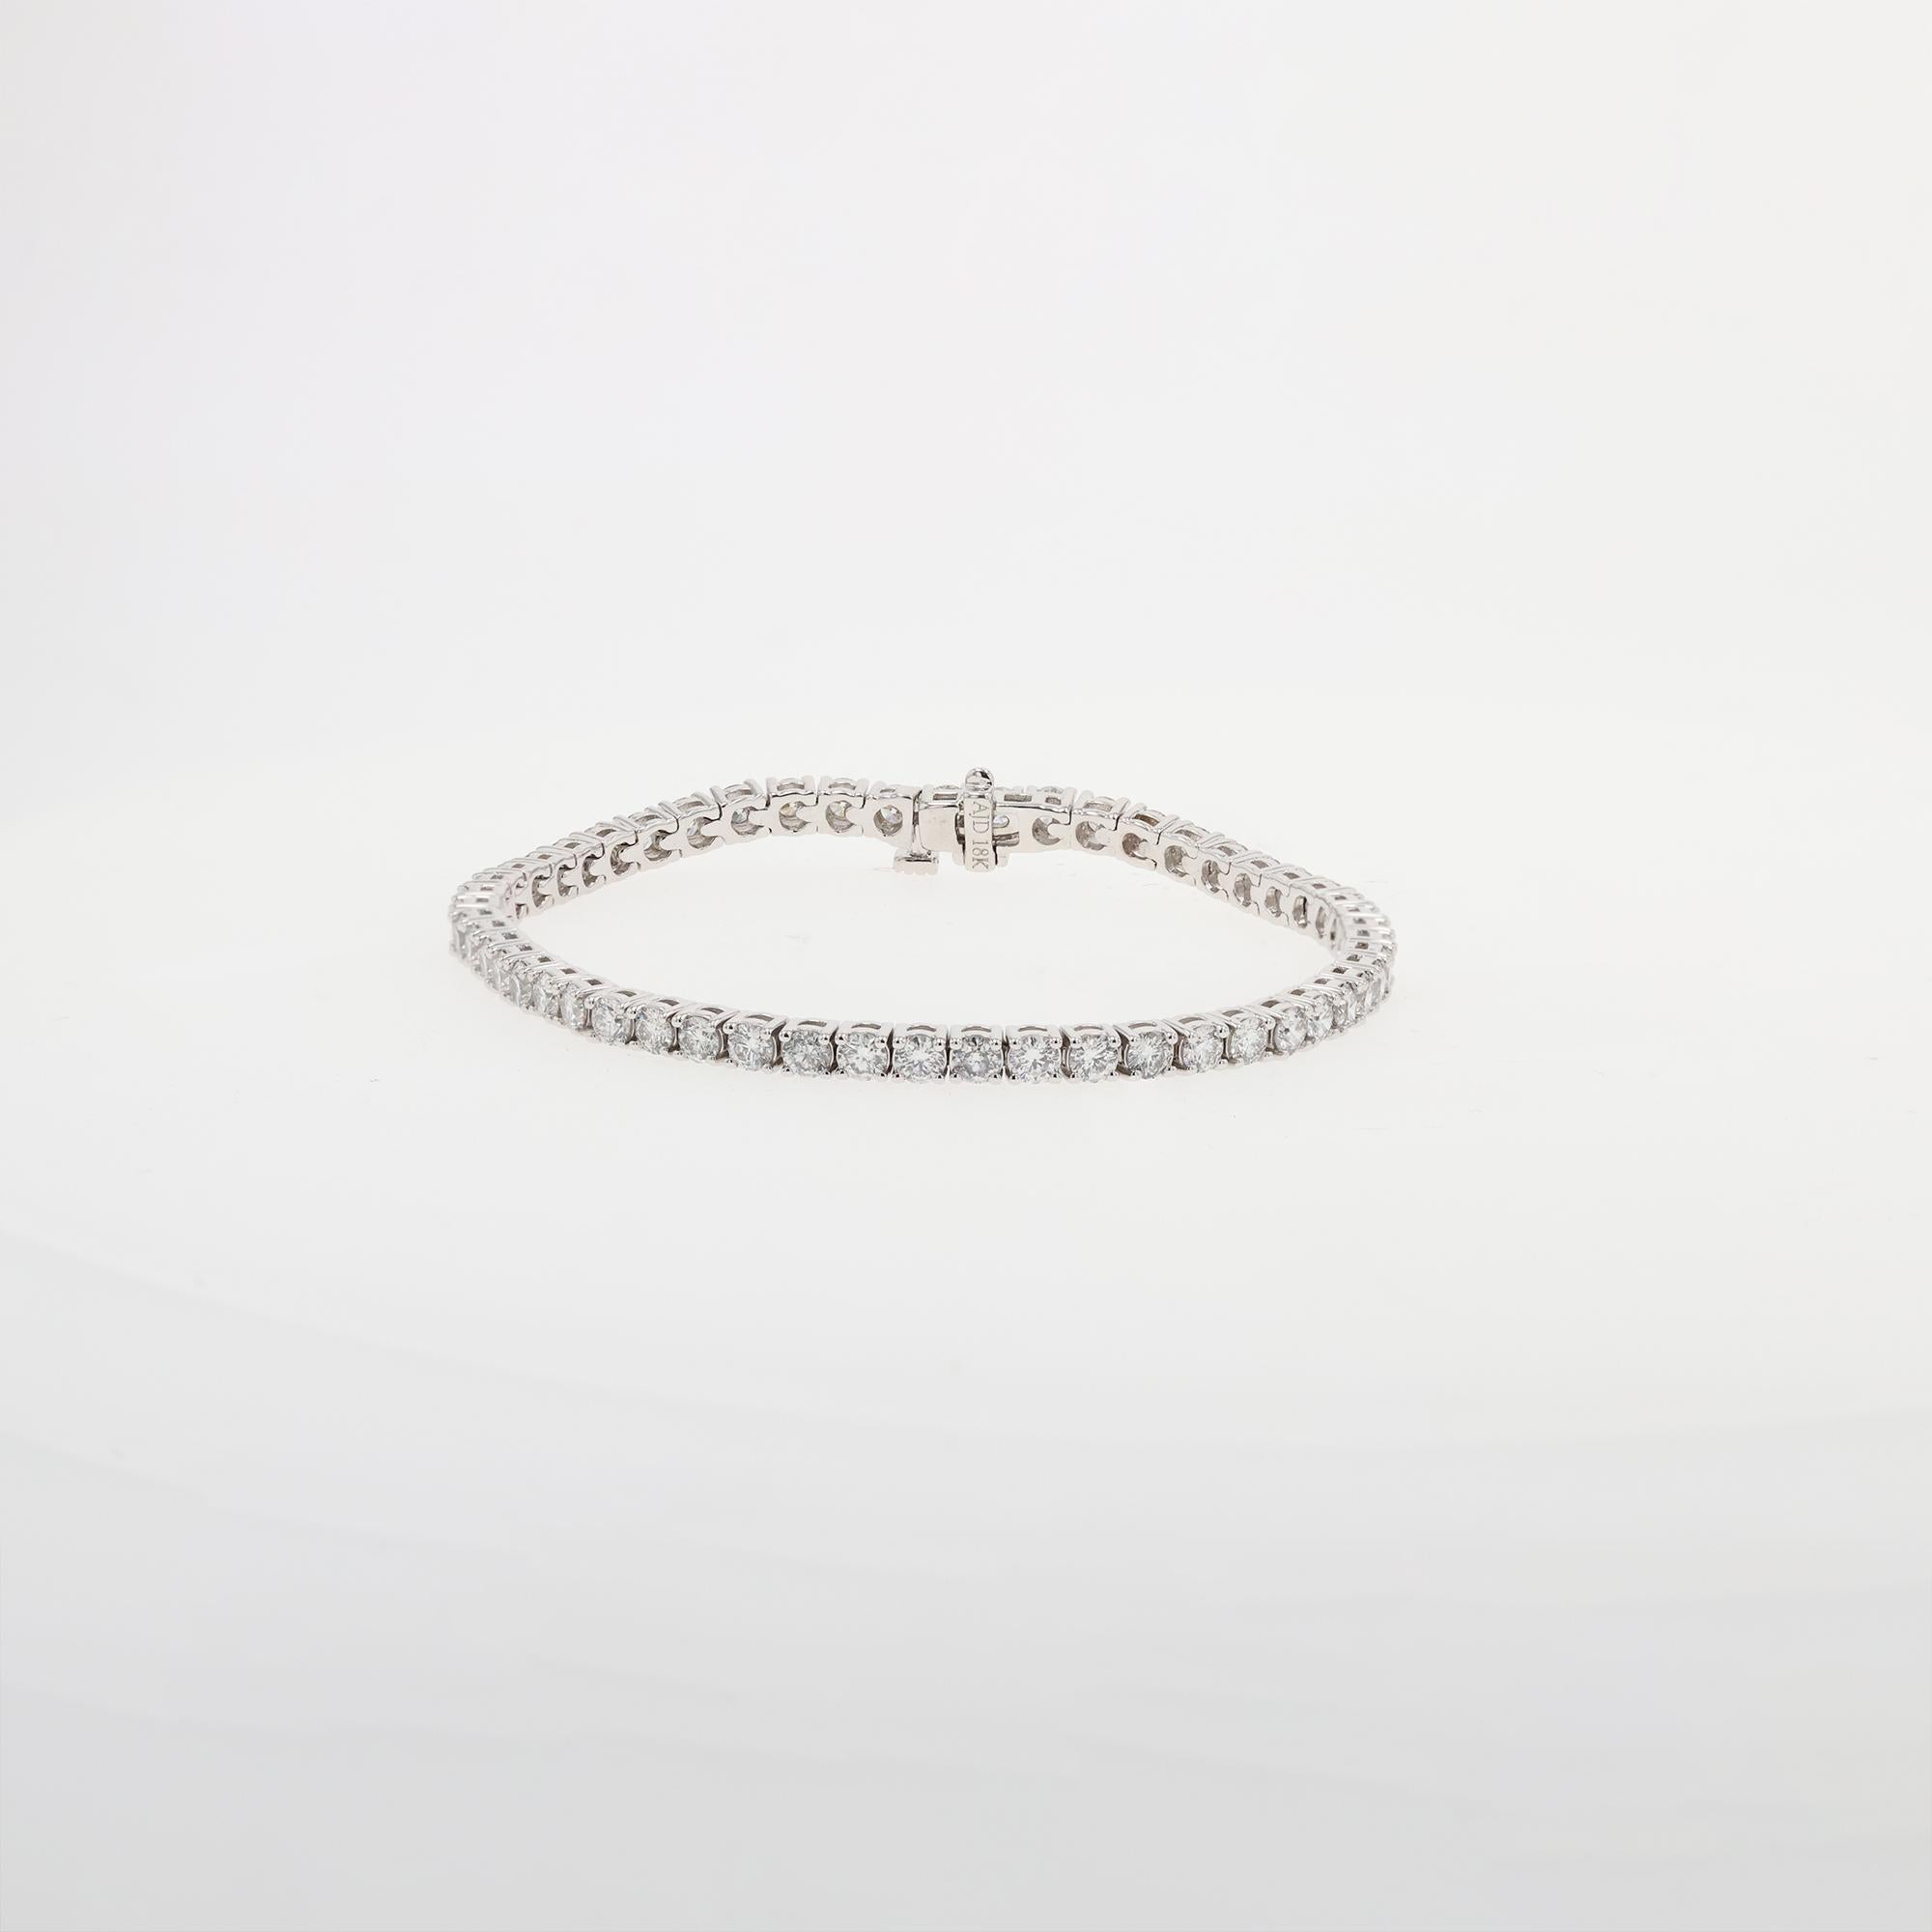 Bracelet vintage en or blanc 18 carats de la ligne Diamant avec 53 diamants ronds de taille brillant. Les diamants sont de couleur G-H et de pureté SI1. Les diamants sont sertis à quatre griffes et montés sur un fil ouvert. 